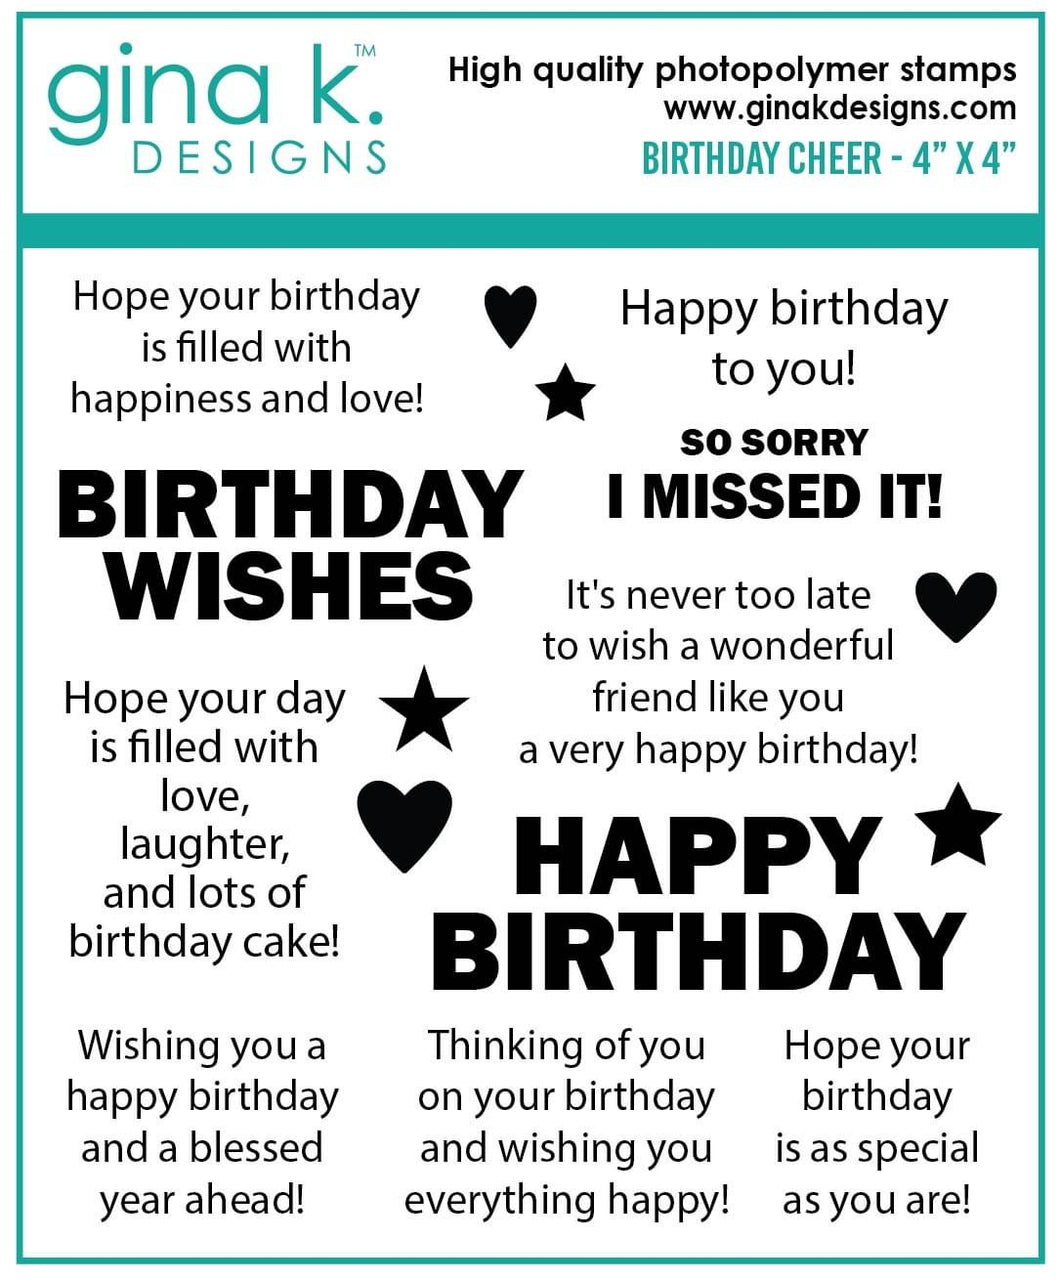 Gina K Designs - Birthday Cheer Mini Stamp Set